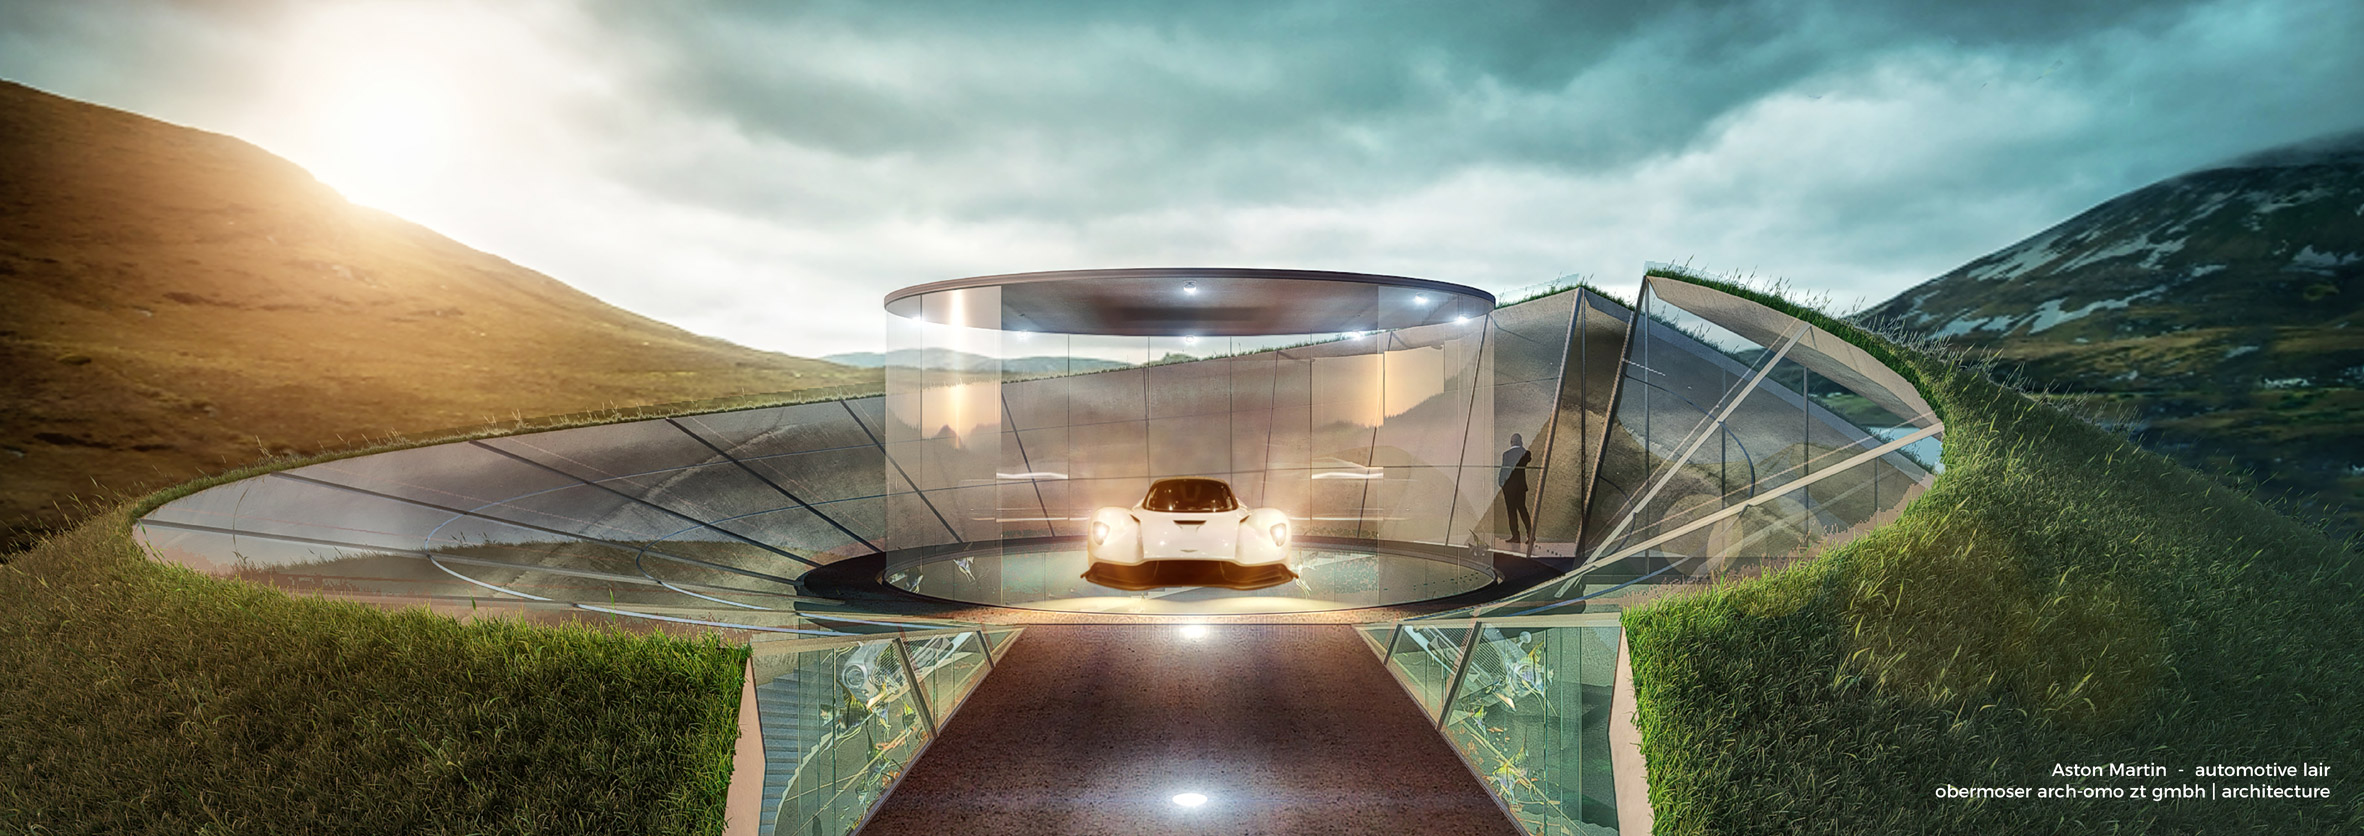 英國超跑品牌Aston Martin推出頂級建築設計服務客製化您的車庫